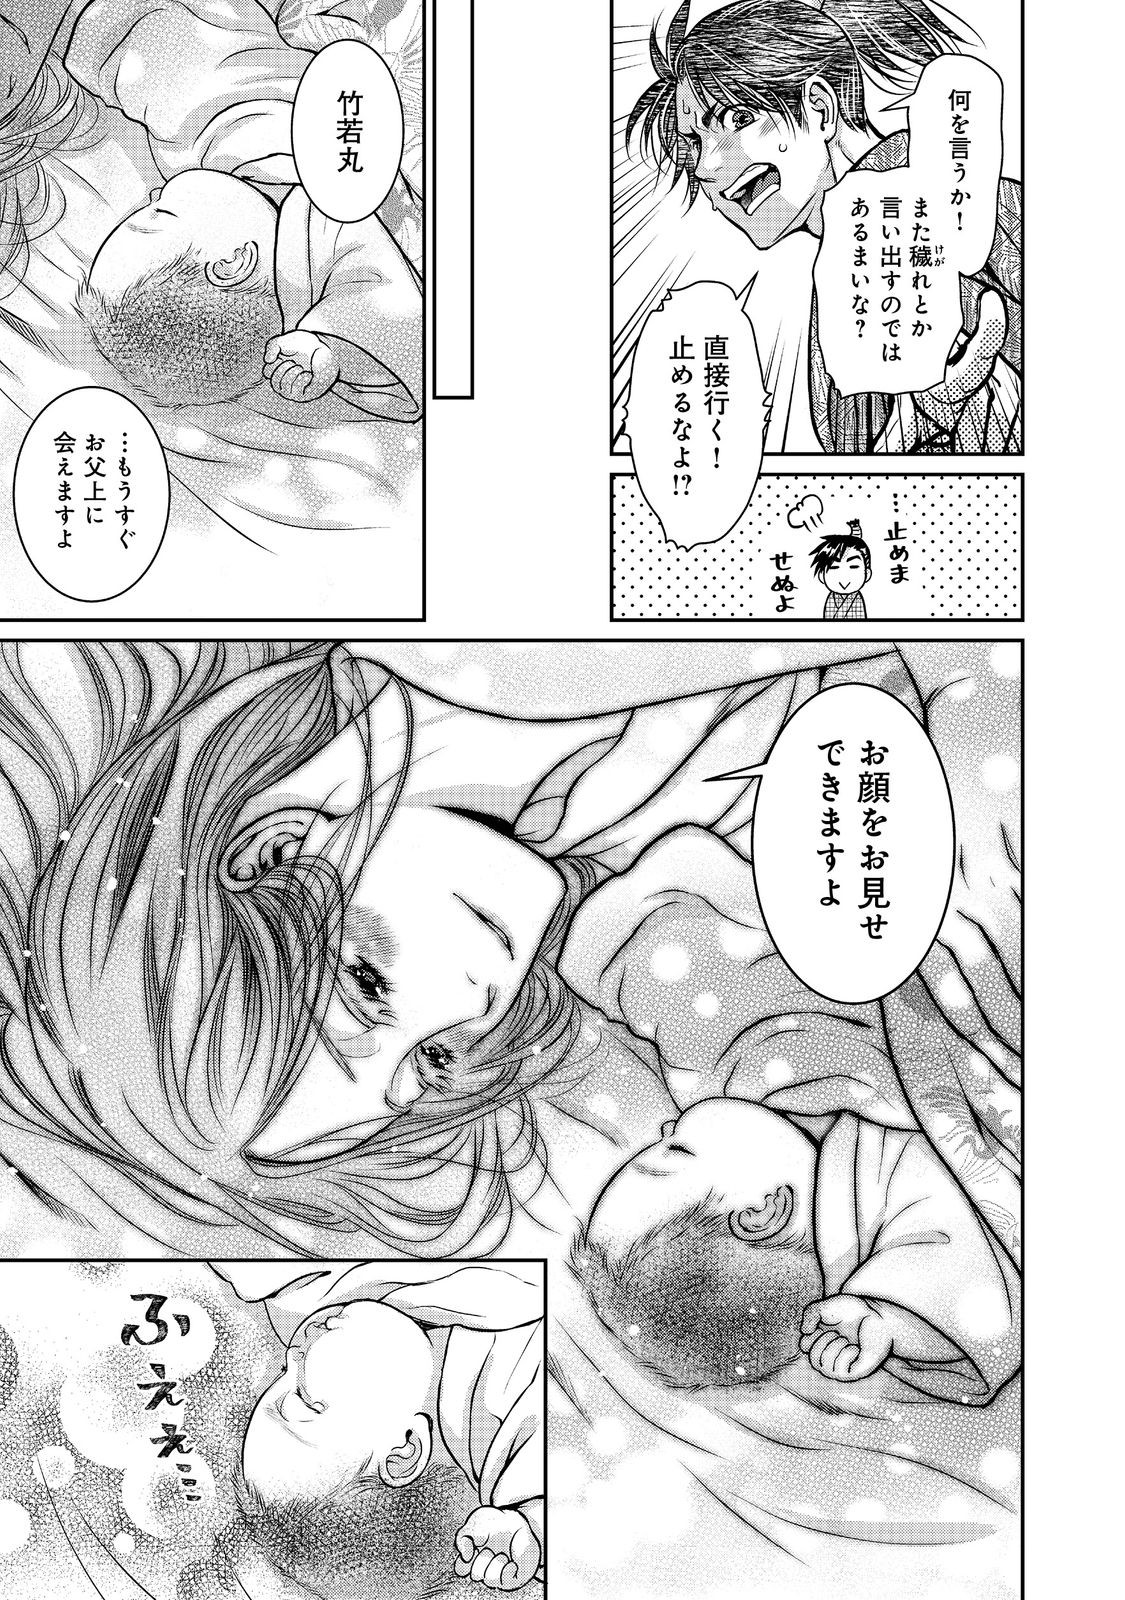 Afumi no Umi – Minamo ga Yureru Toki - Chapter 35 - Page 26